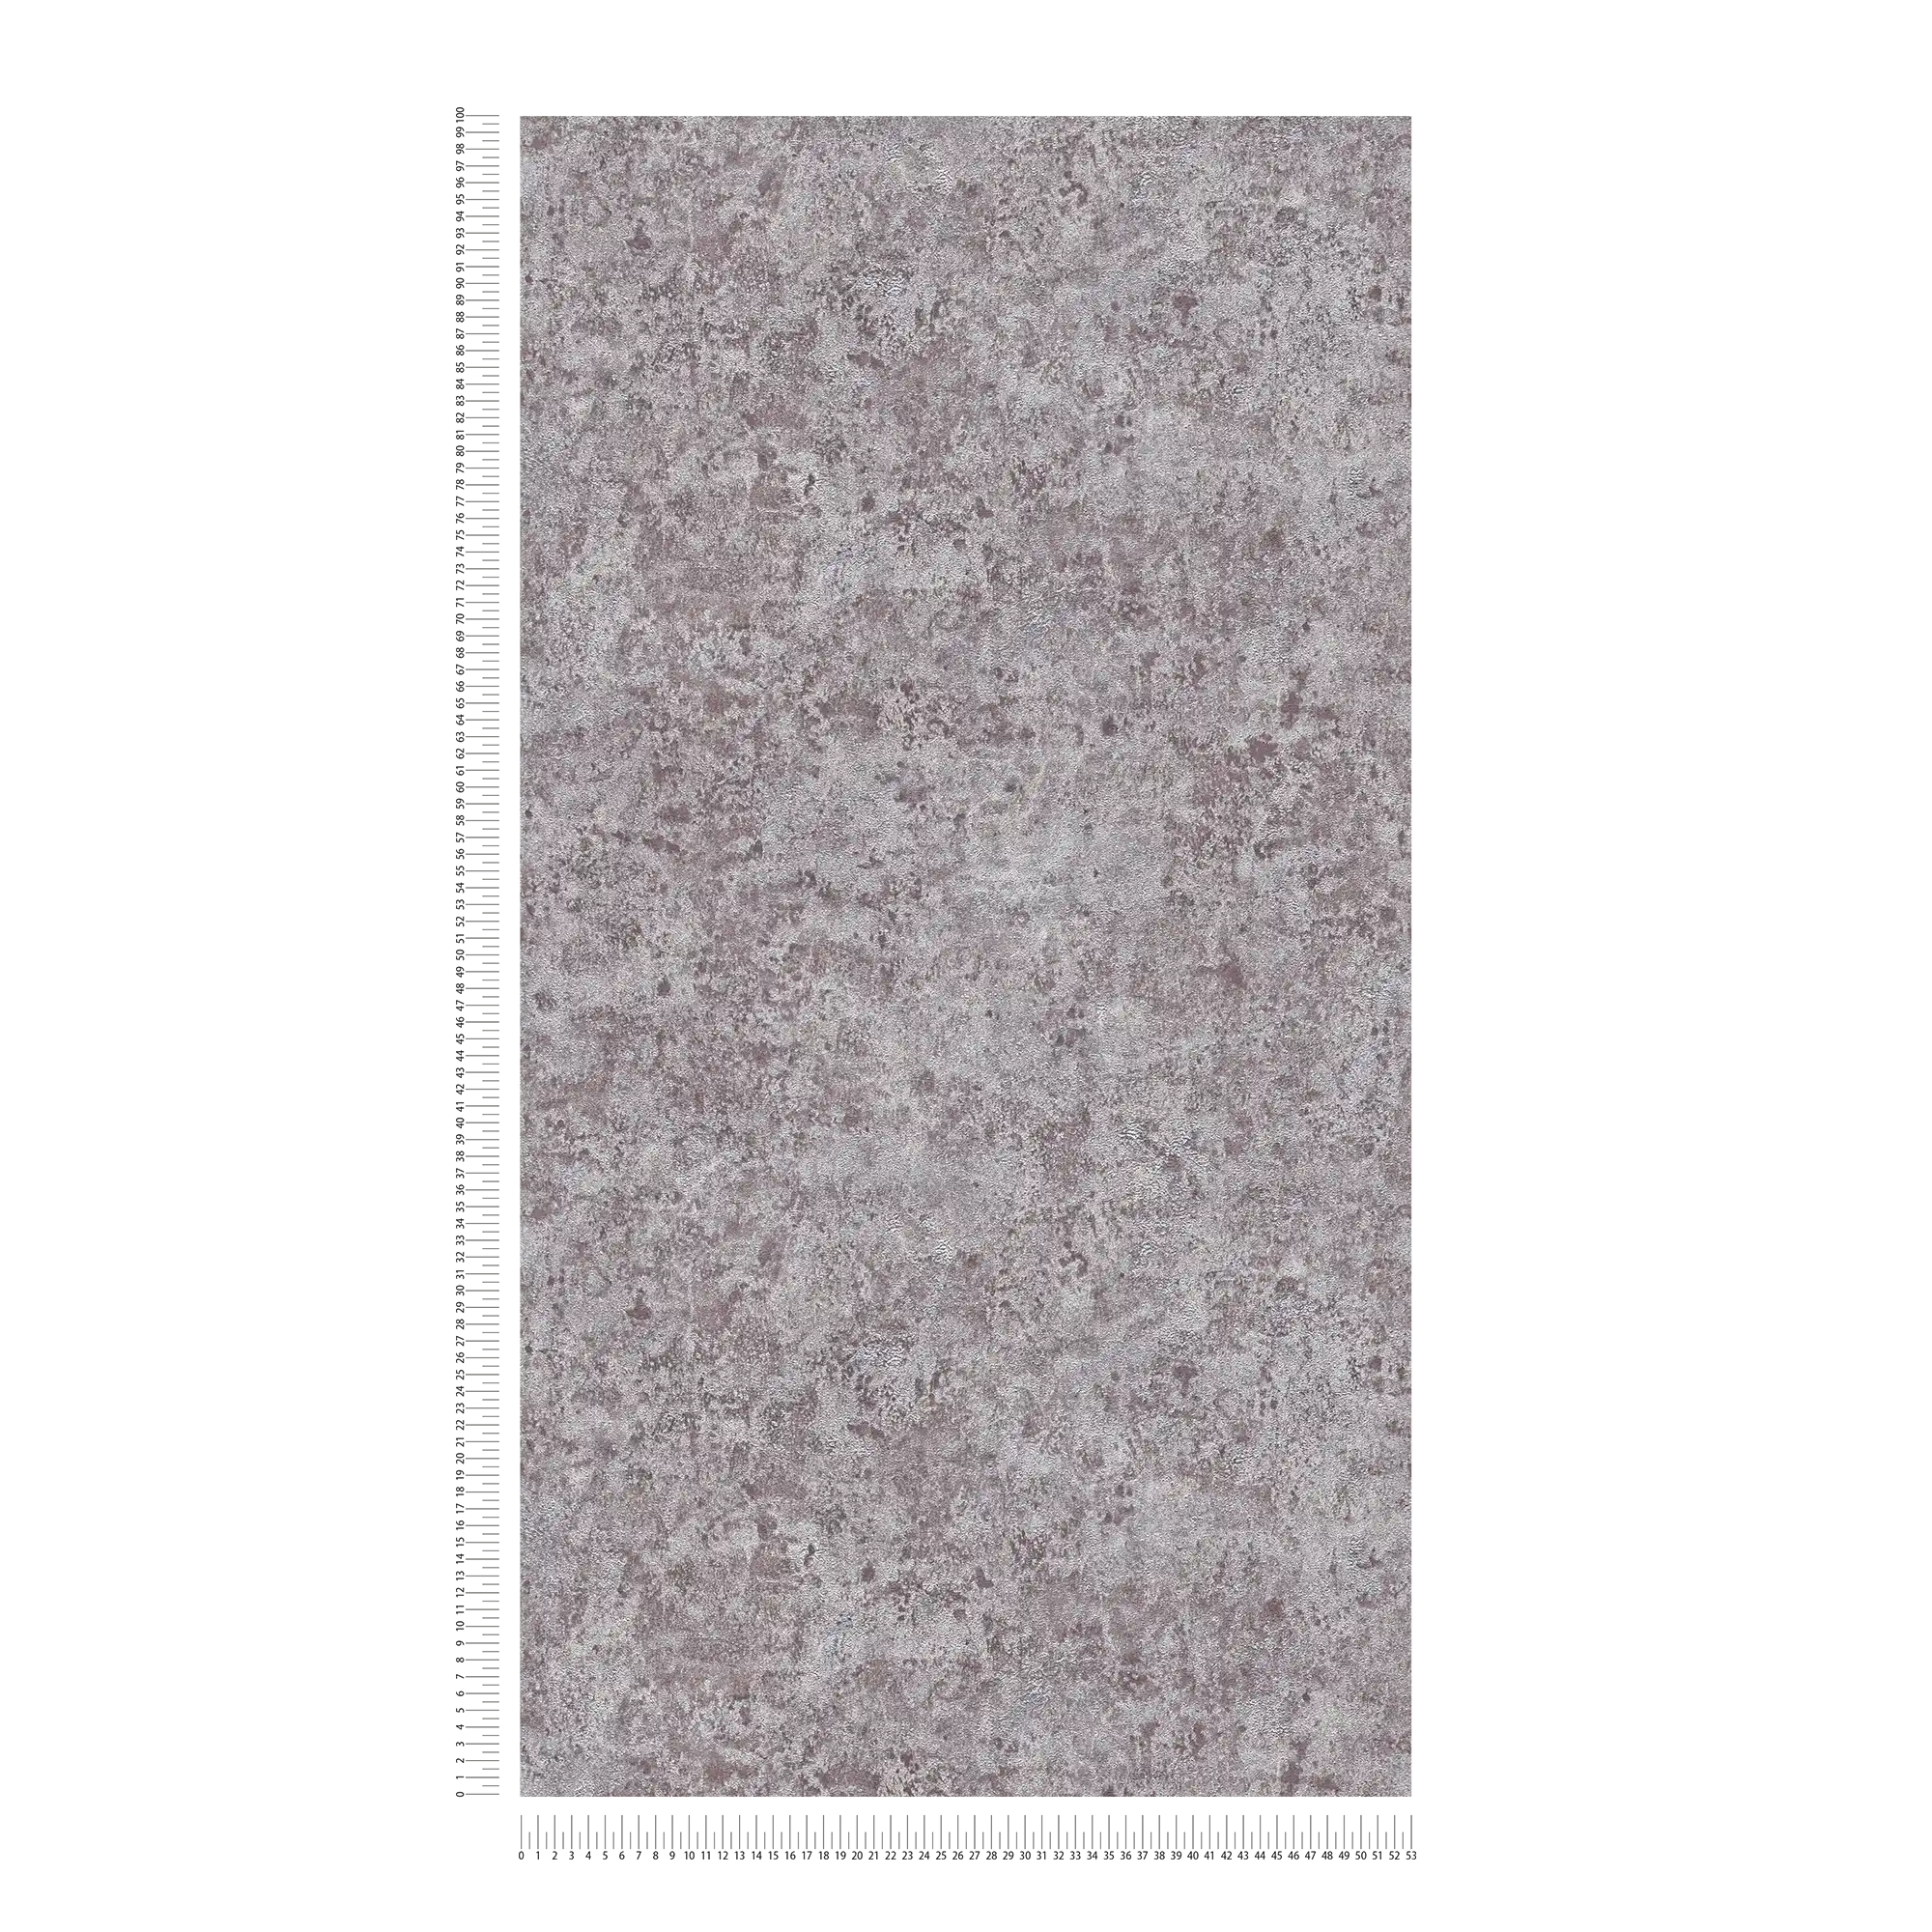             Carta da parati in tessuto non tessuto con effetto metallizzato lucido - grigio, argento, marrone
        